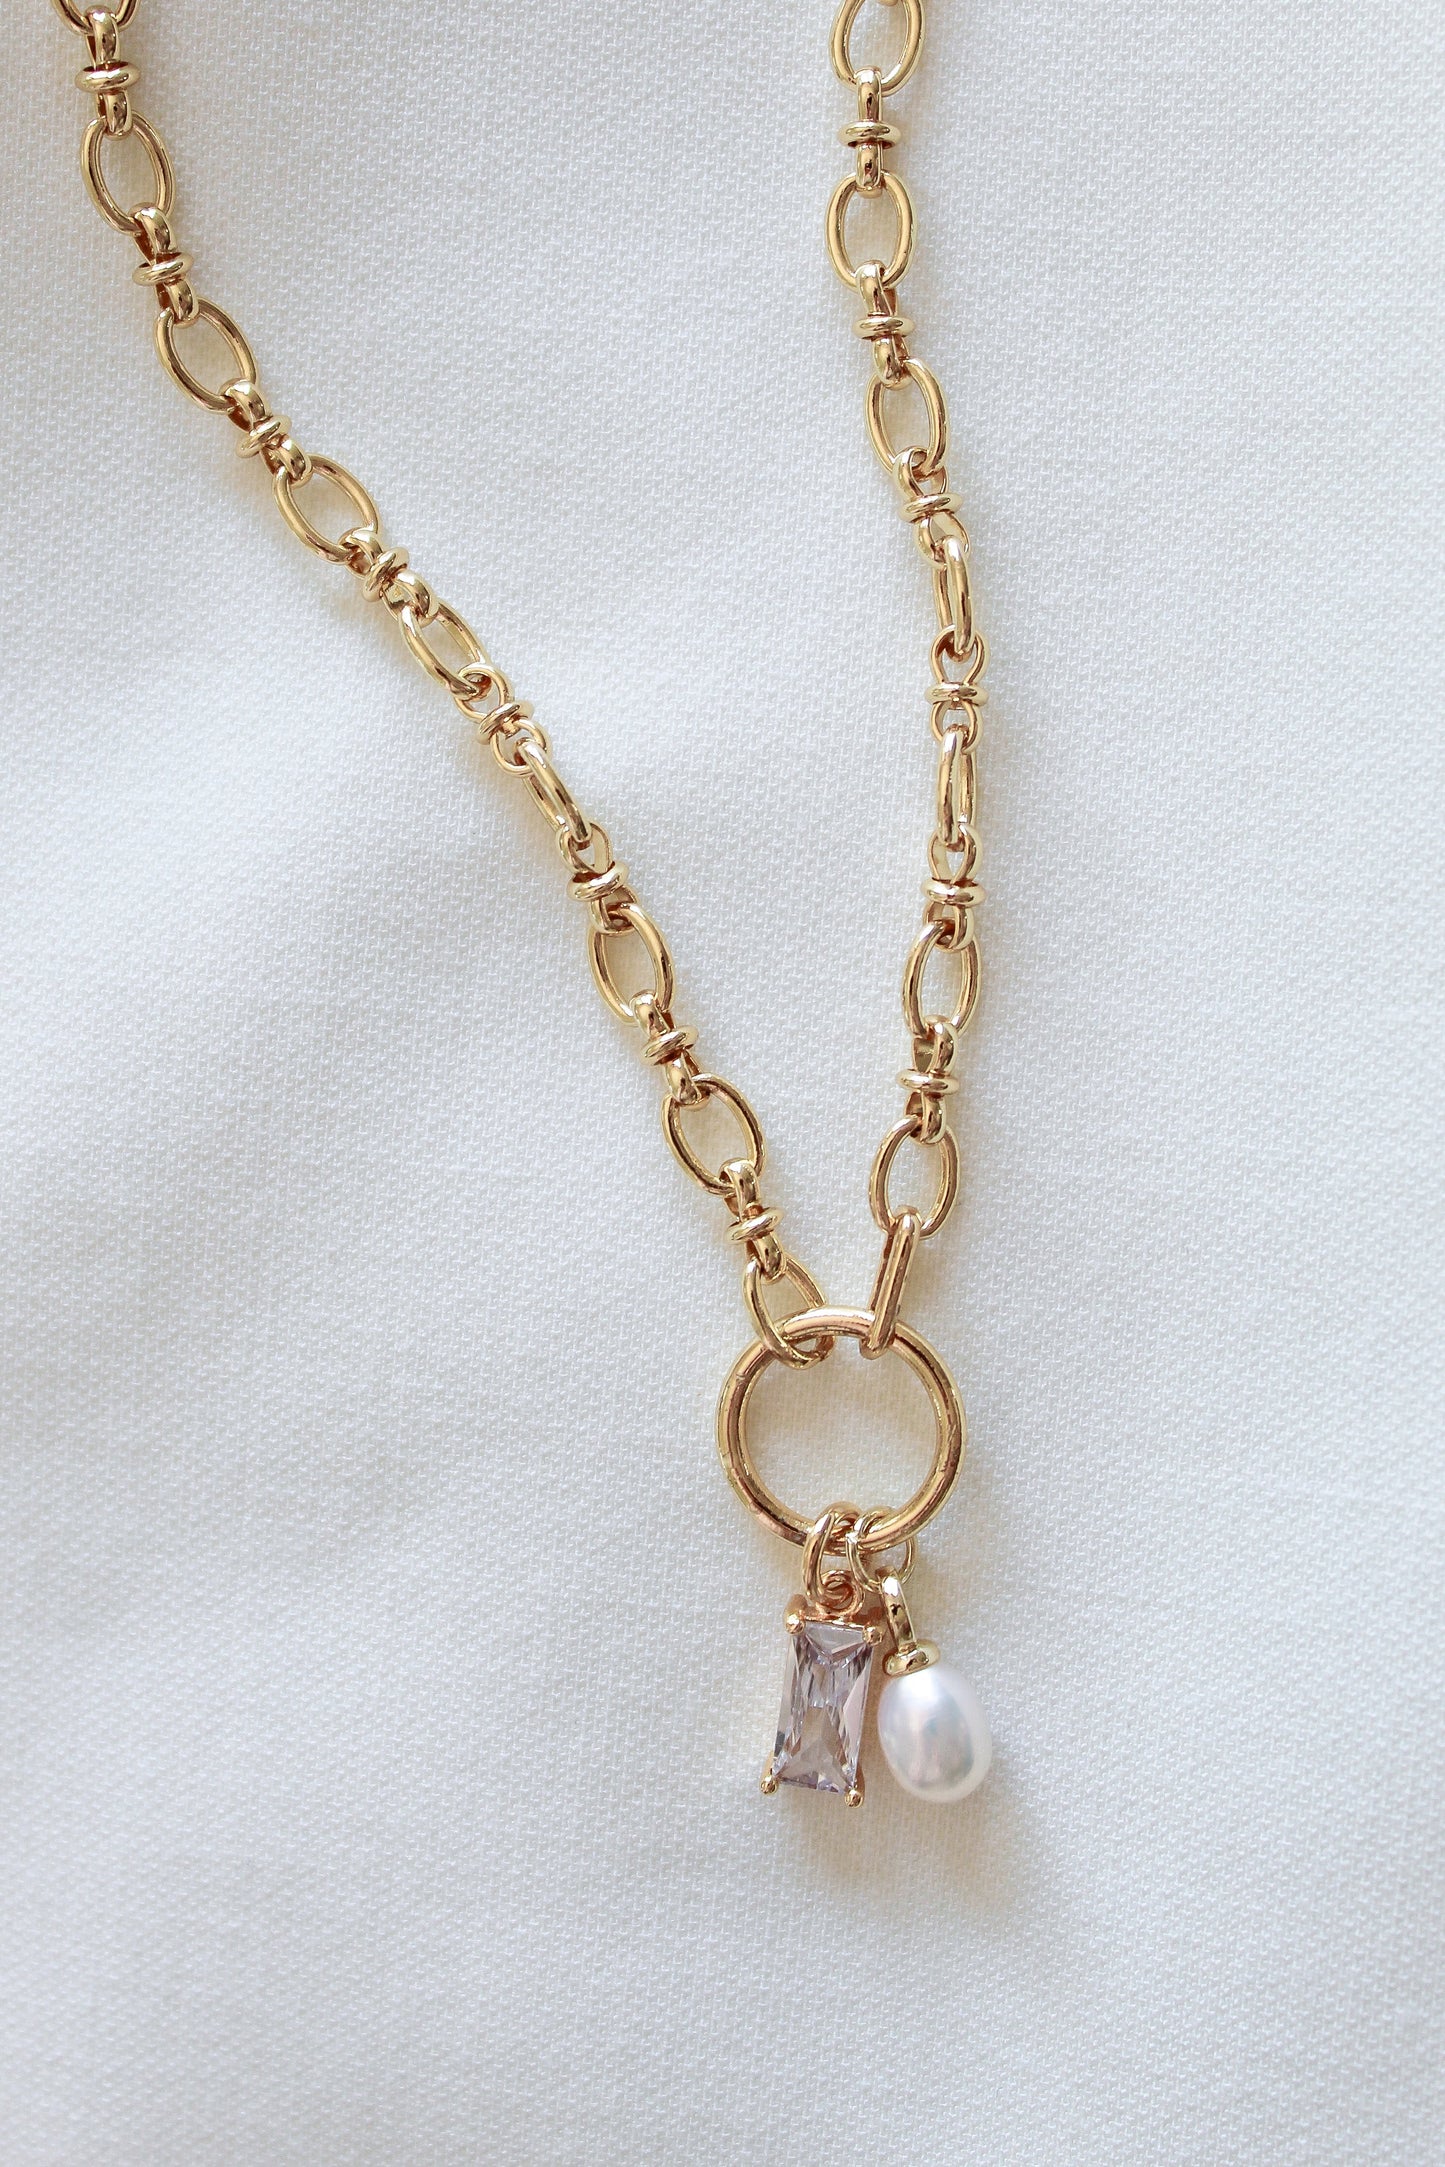 Kinsey Designs Sophie gold-filled necklace